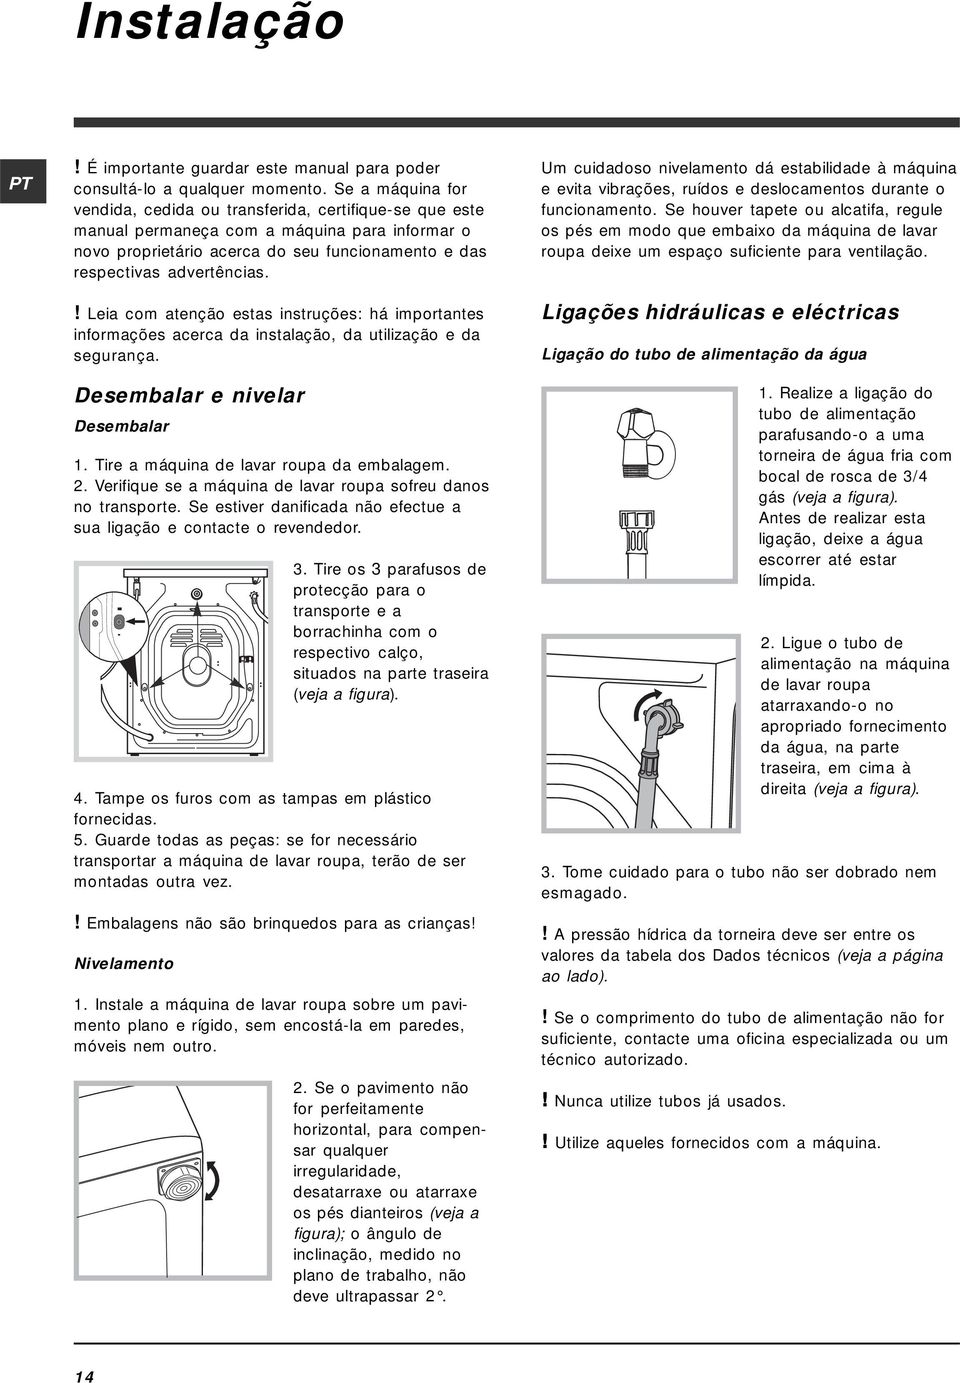 ! Leia com atenção estas instruções: há importantes informações acerca da instalação, da utilização e da segurança. Desembalar e nivelar Desembalar 1. Tire a máquina de lavar roupa da embalagem. 2.